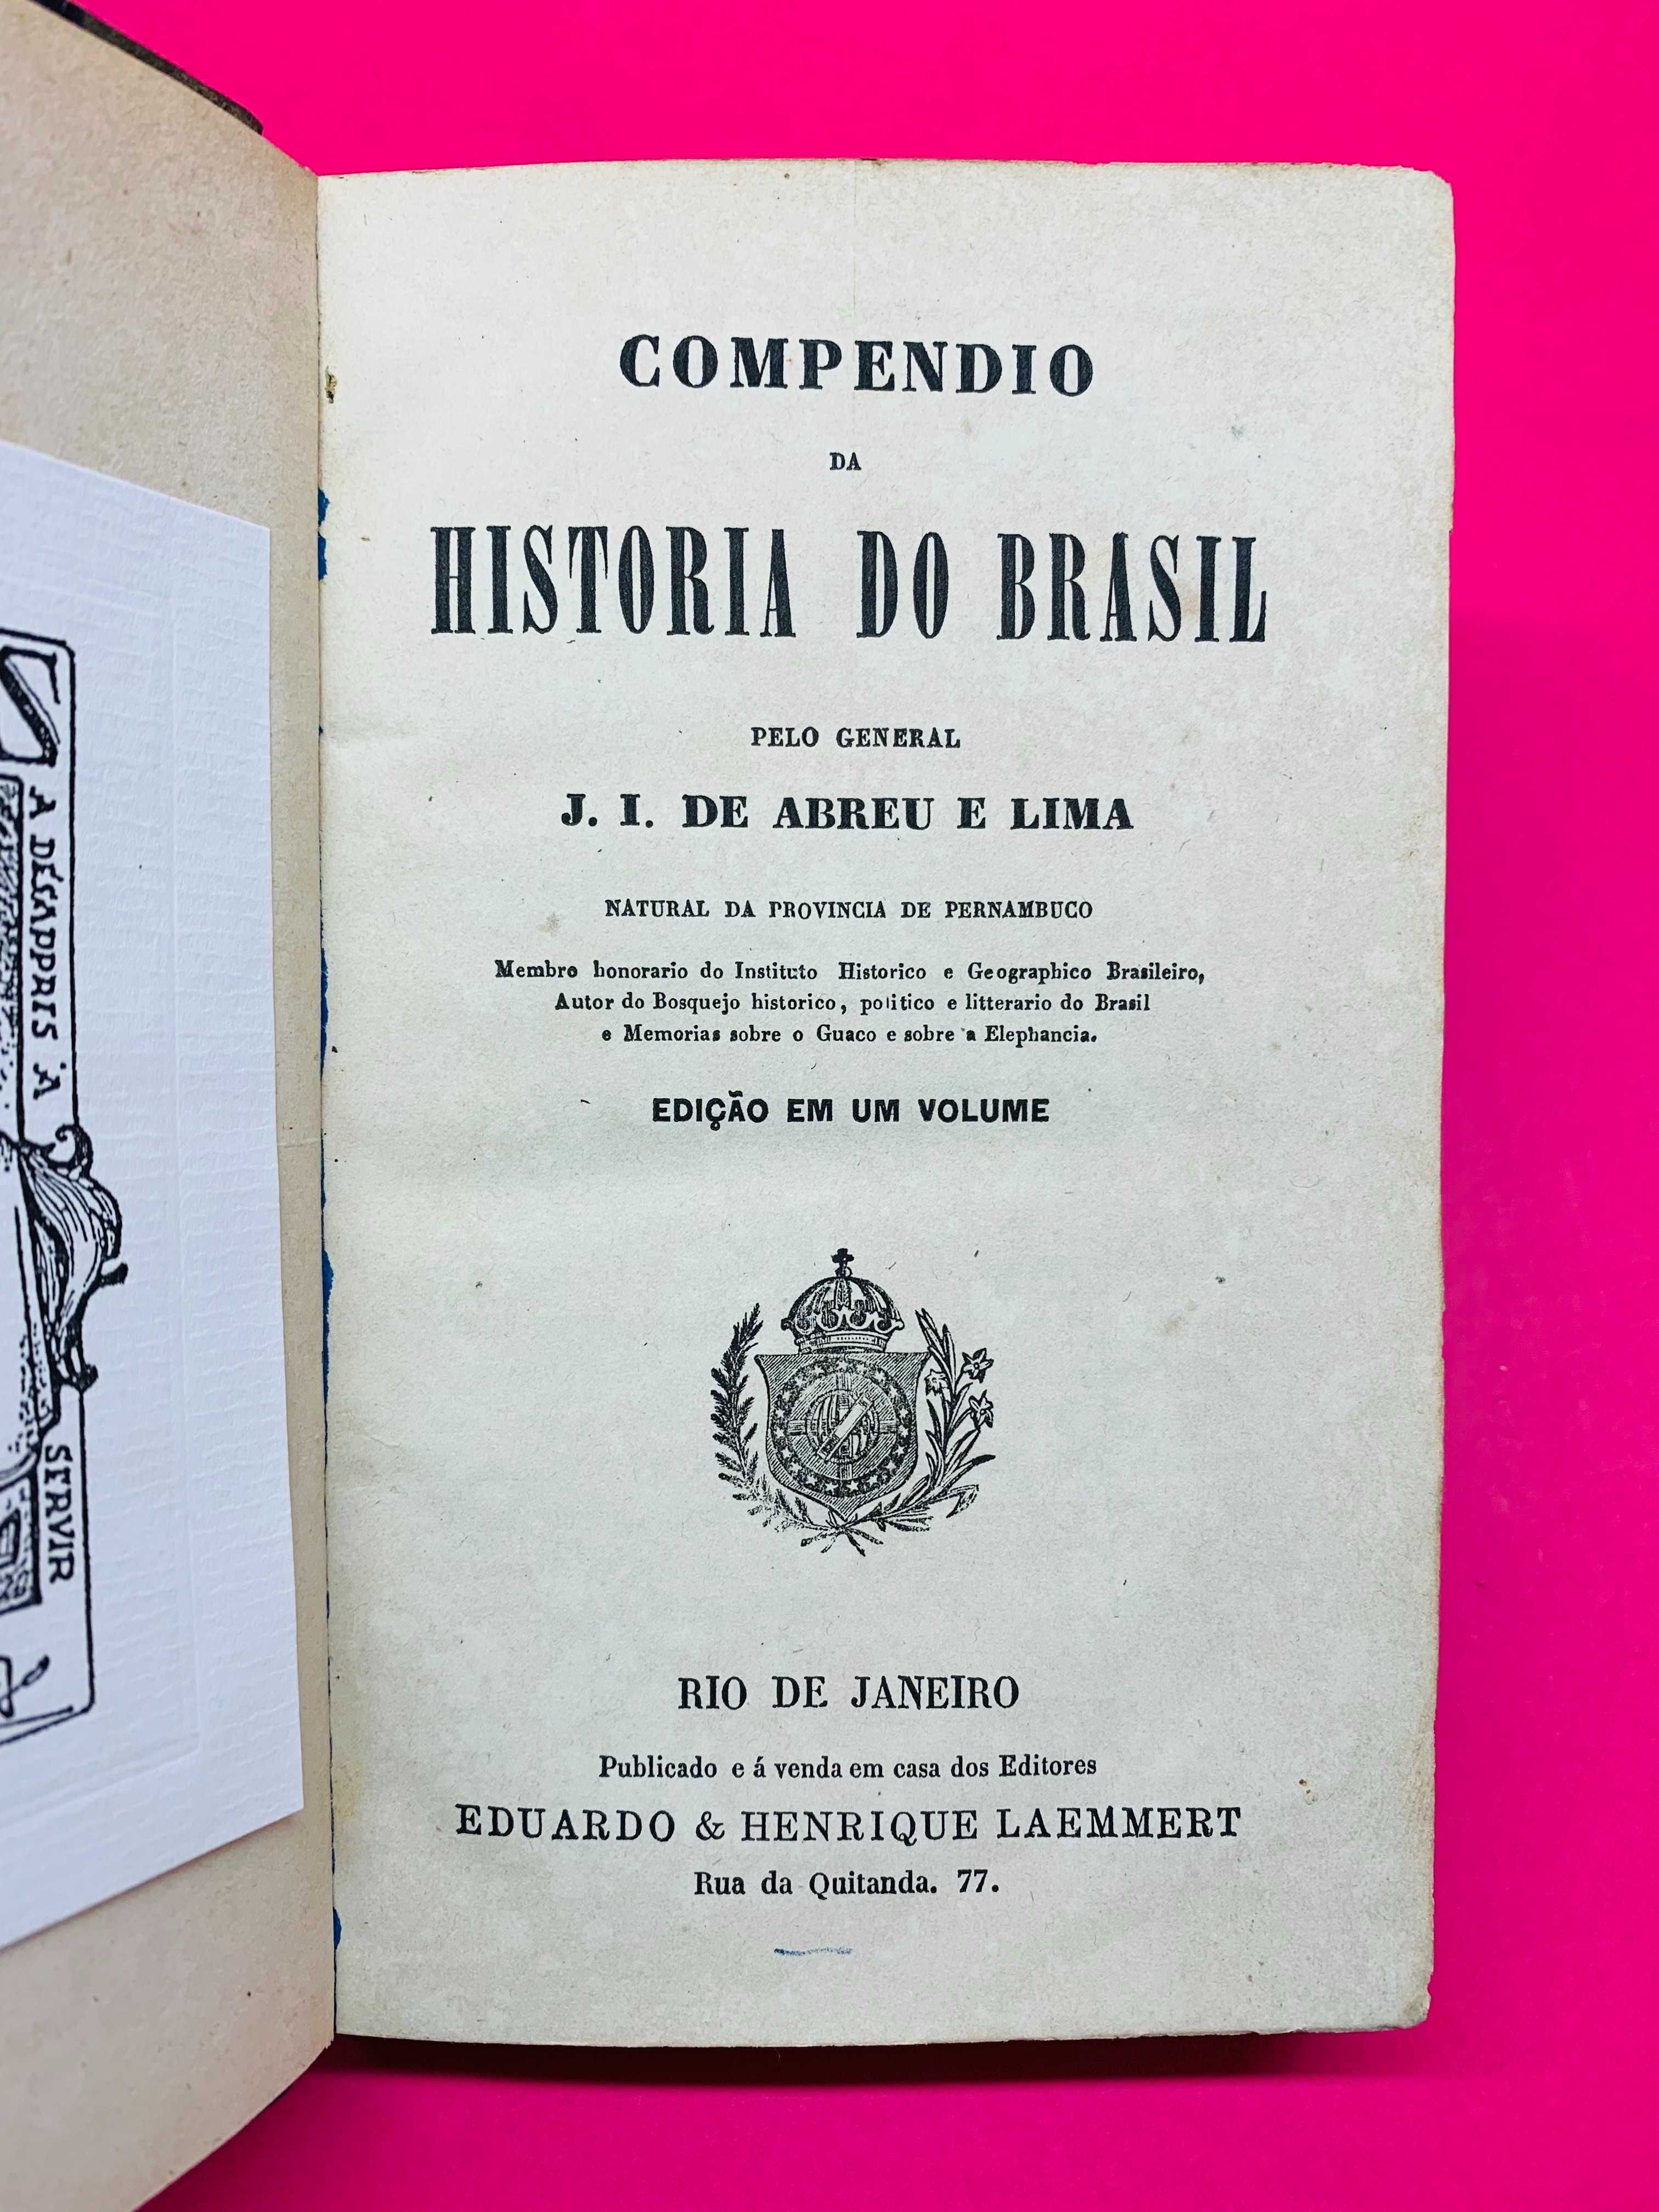 Compêndio da História do Brasil - J. I. de Abreu e Lima